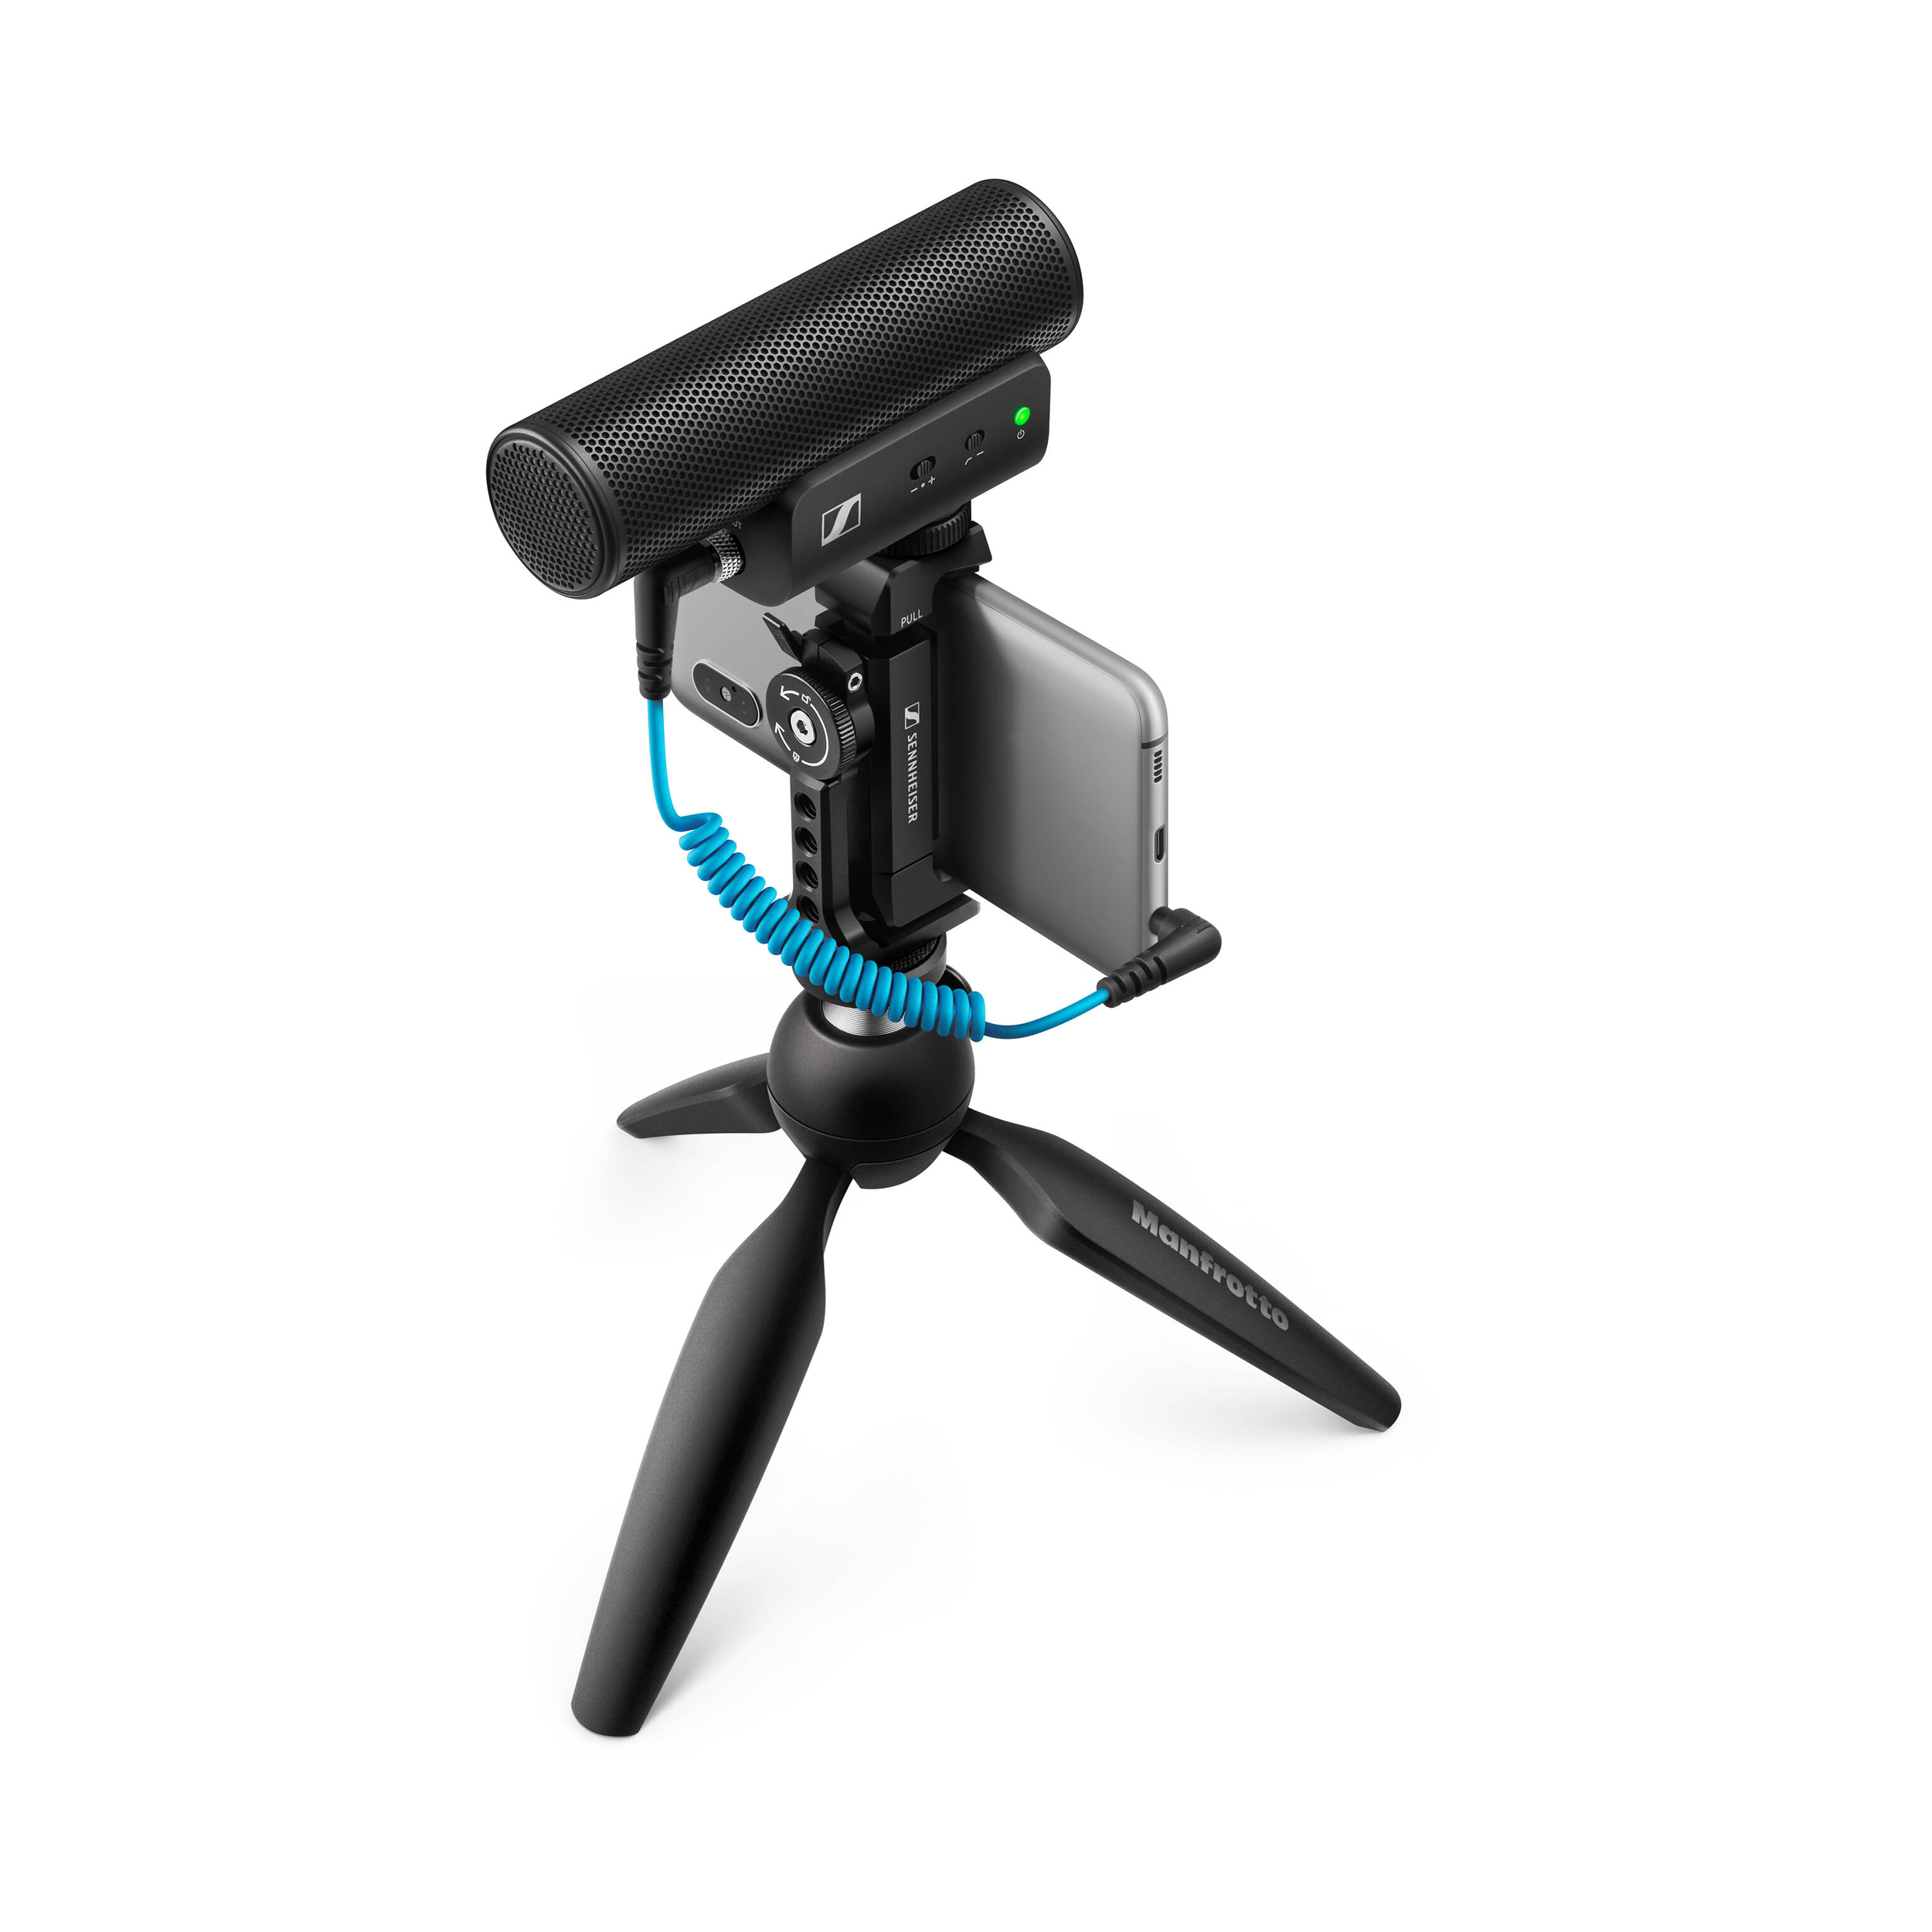 Sennheiser MKE 400 Microphone de fusil de chasse à la caméra (2e génération)